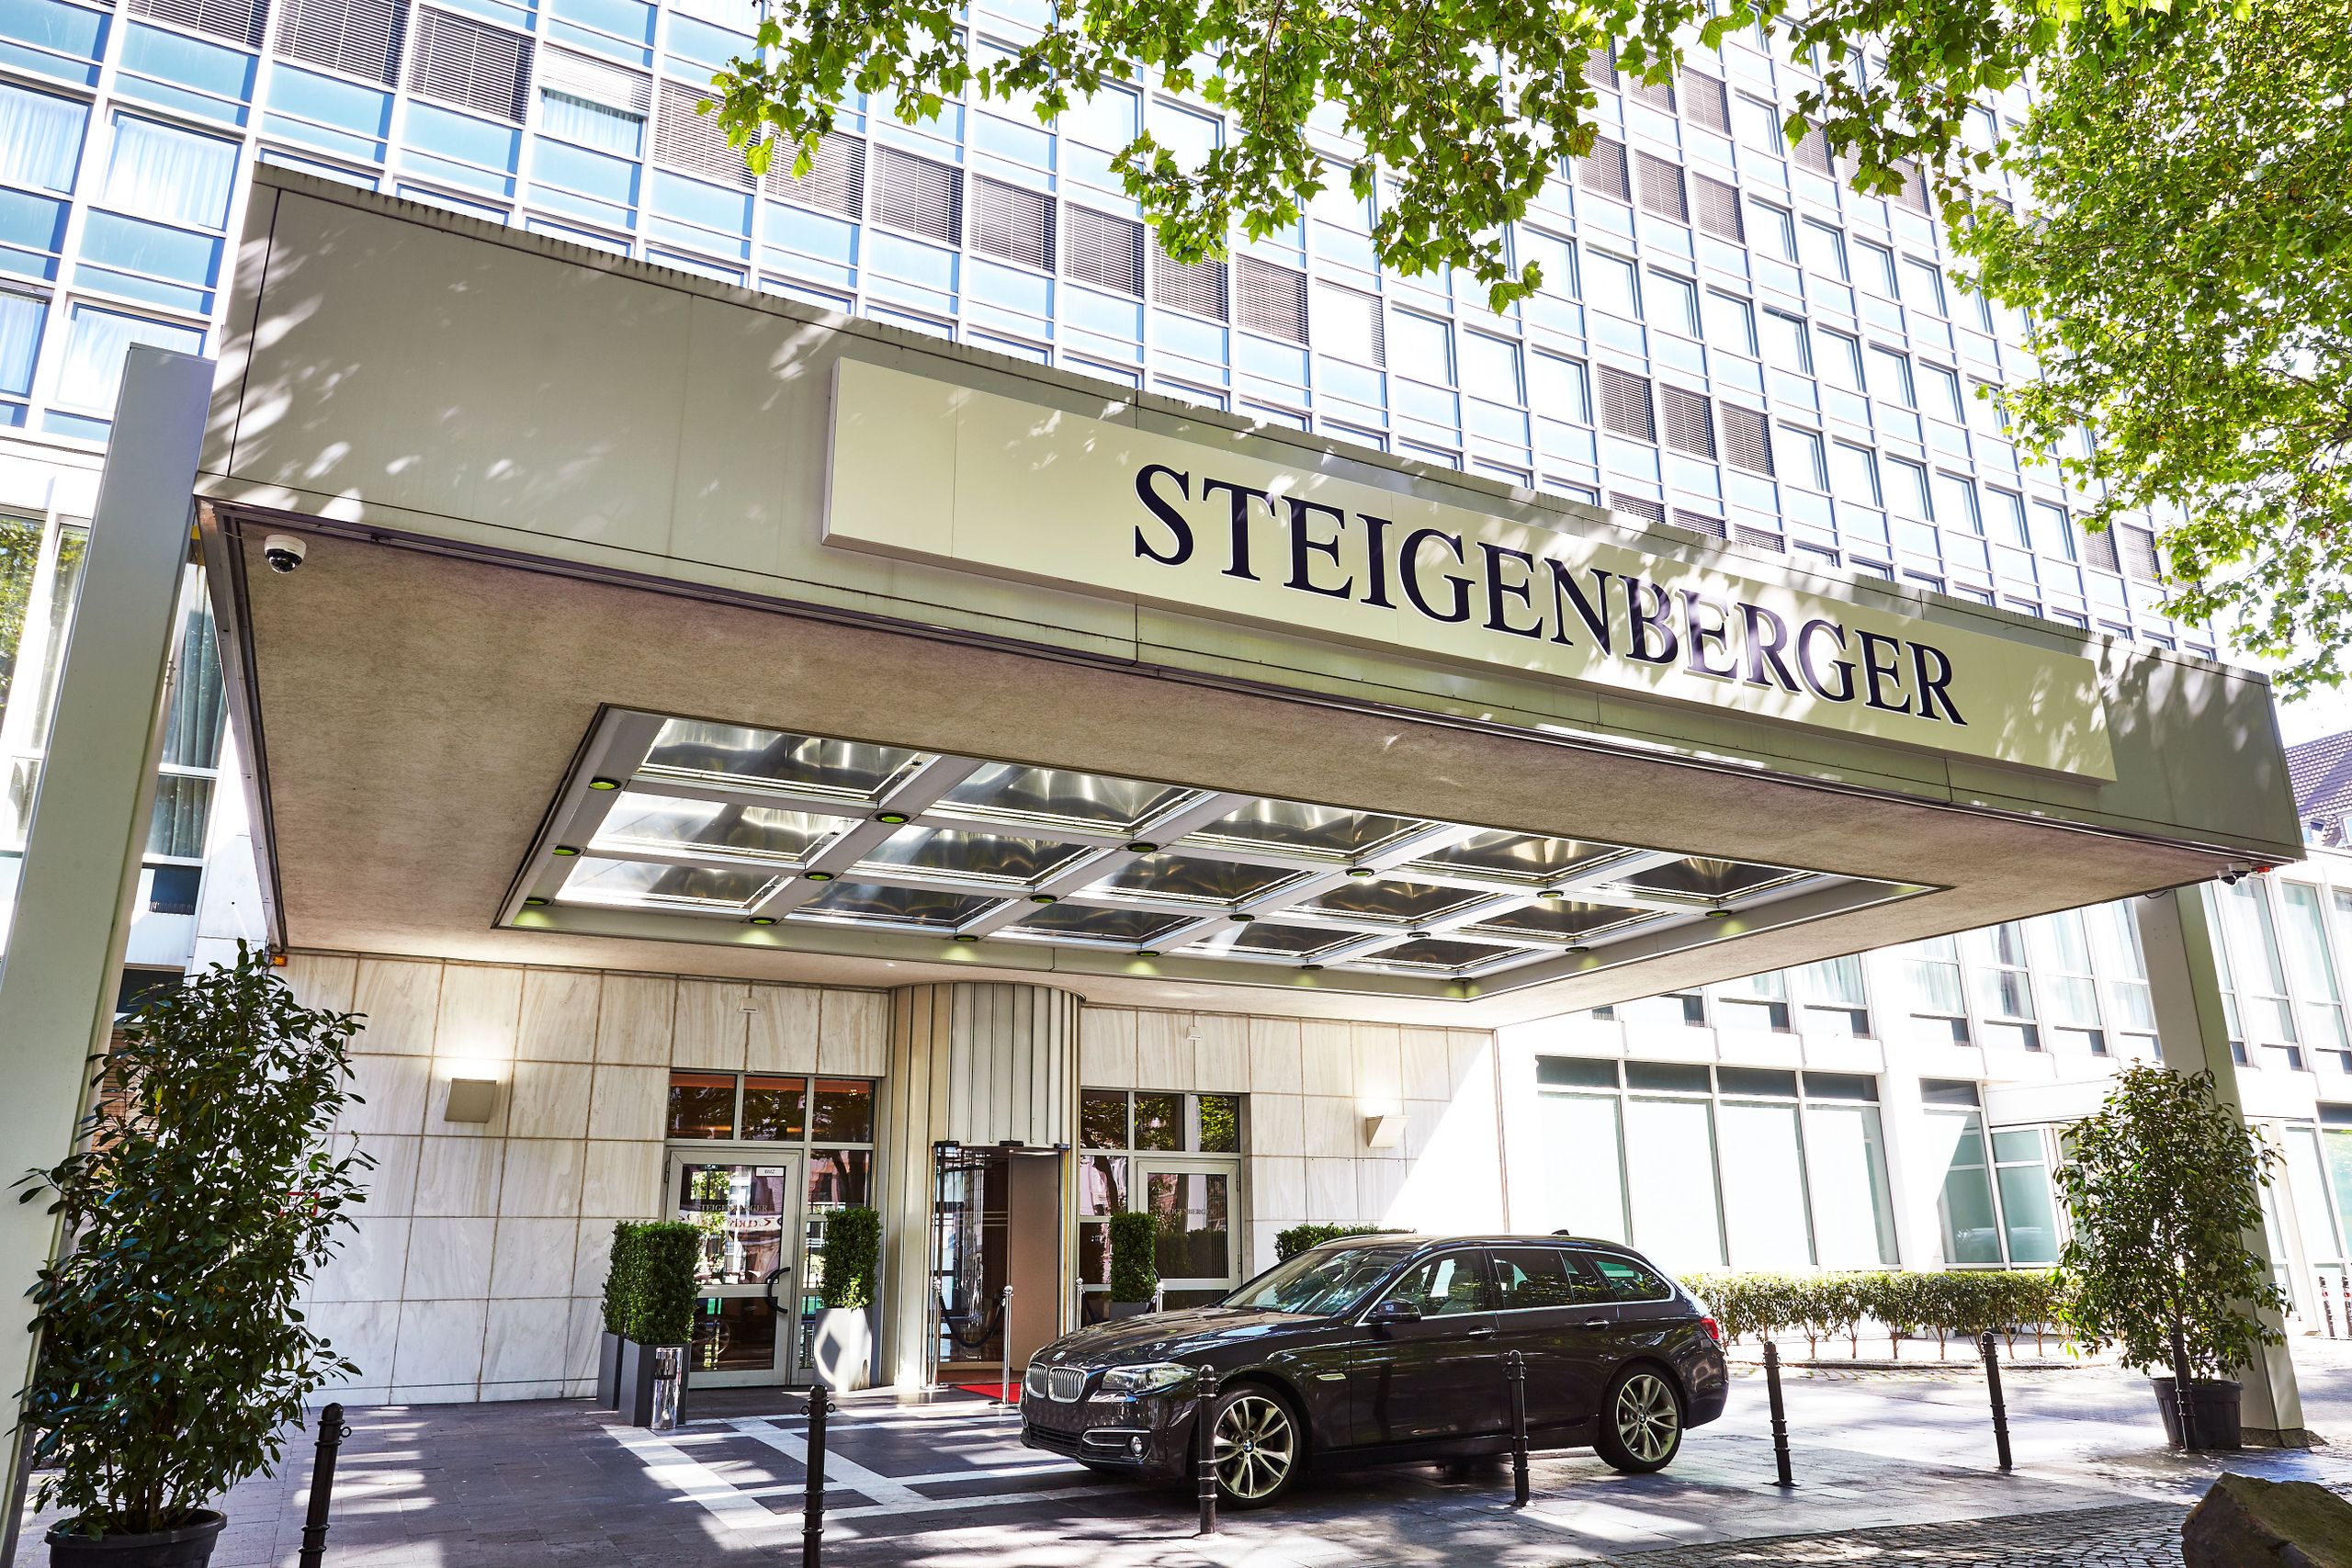 Steigenberger Hotel Köln, Cologne – Entrance